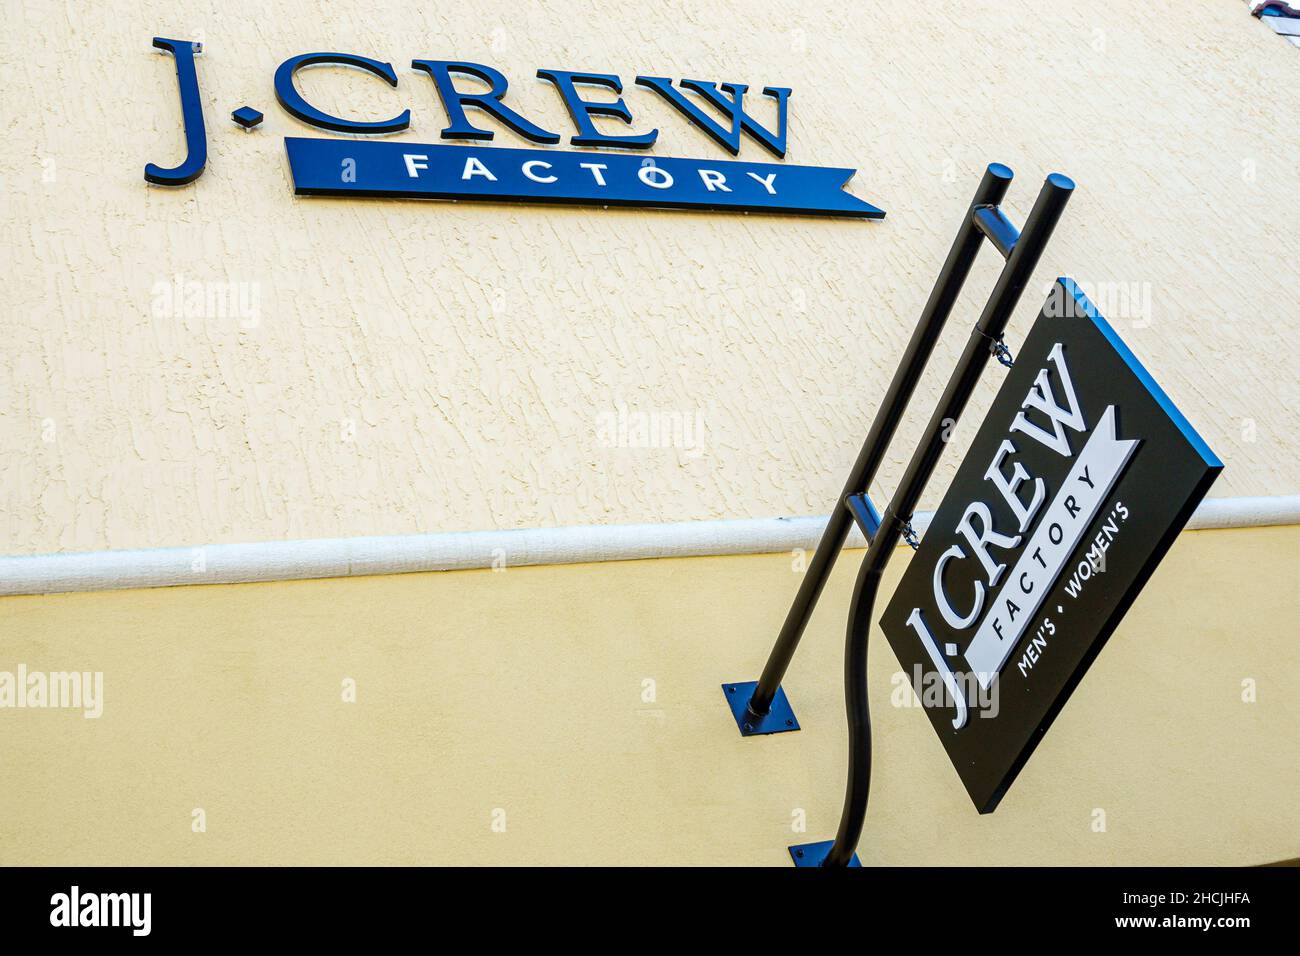 Orlando Florida Orlando Vineland Premium Outlets magasin d'usine de magasins d'usine de mode galerie marchande J. Crew pour hommes affiche de vêtements pour femmes extérieur Banque D'Images